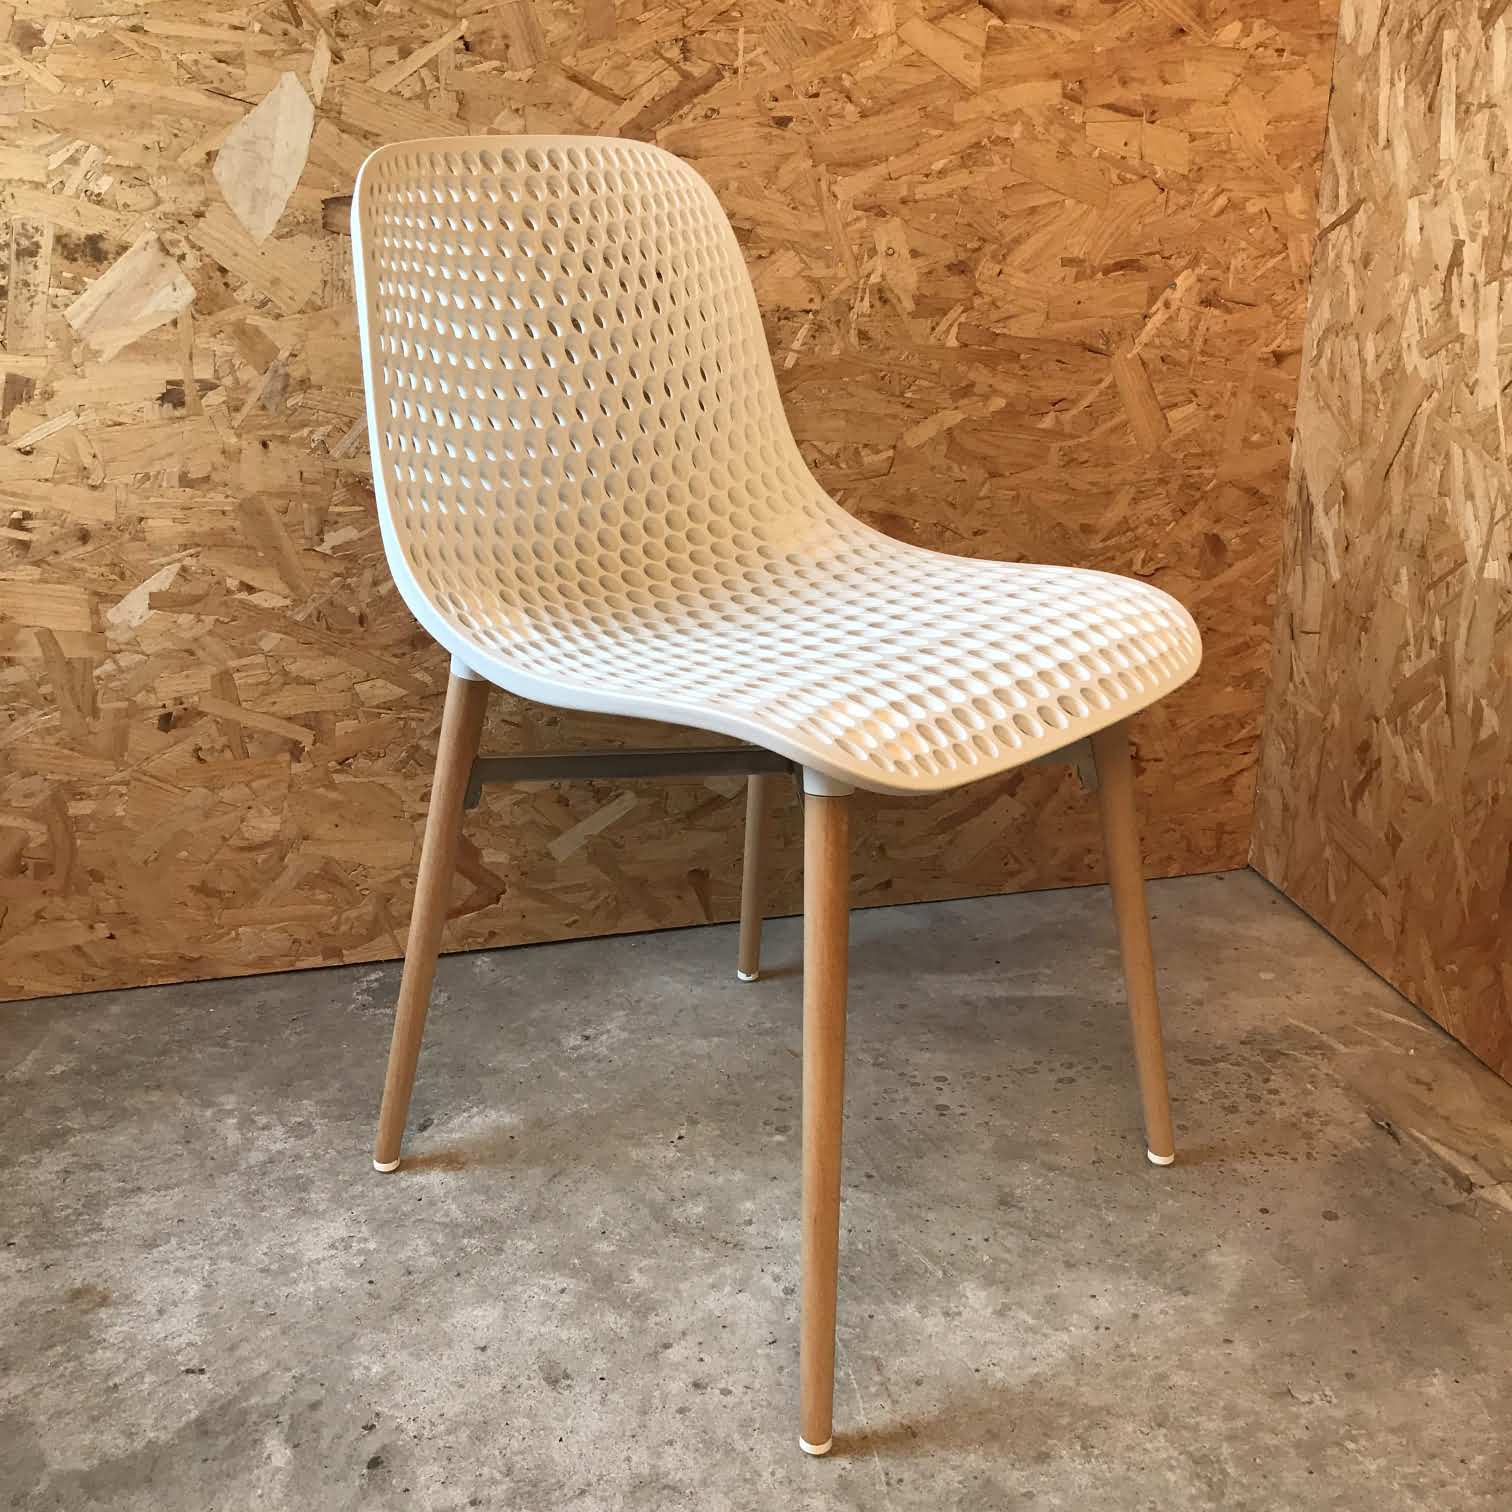 29 - Next eetkamer stoel polyamide kunststof houten aluminium versteviging - Infiniti aanzicht voor rechts - Afrit 29 Sint-Oedenrode